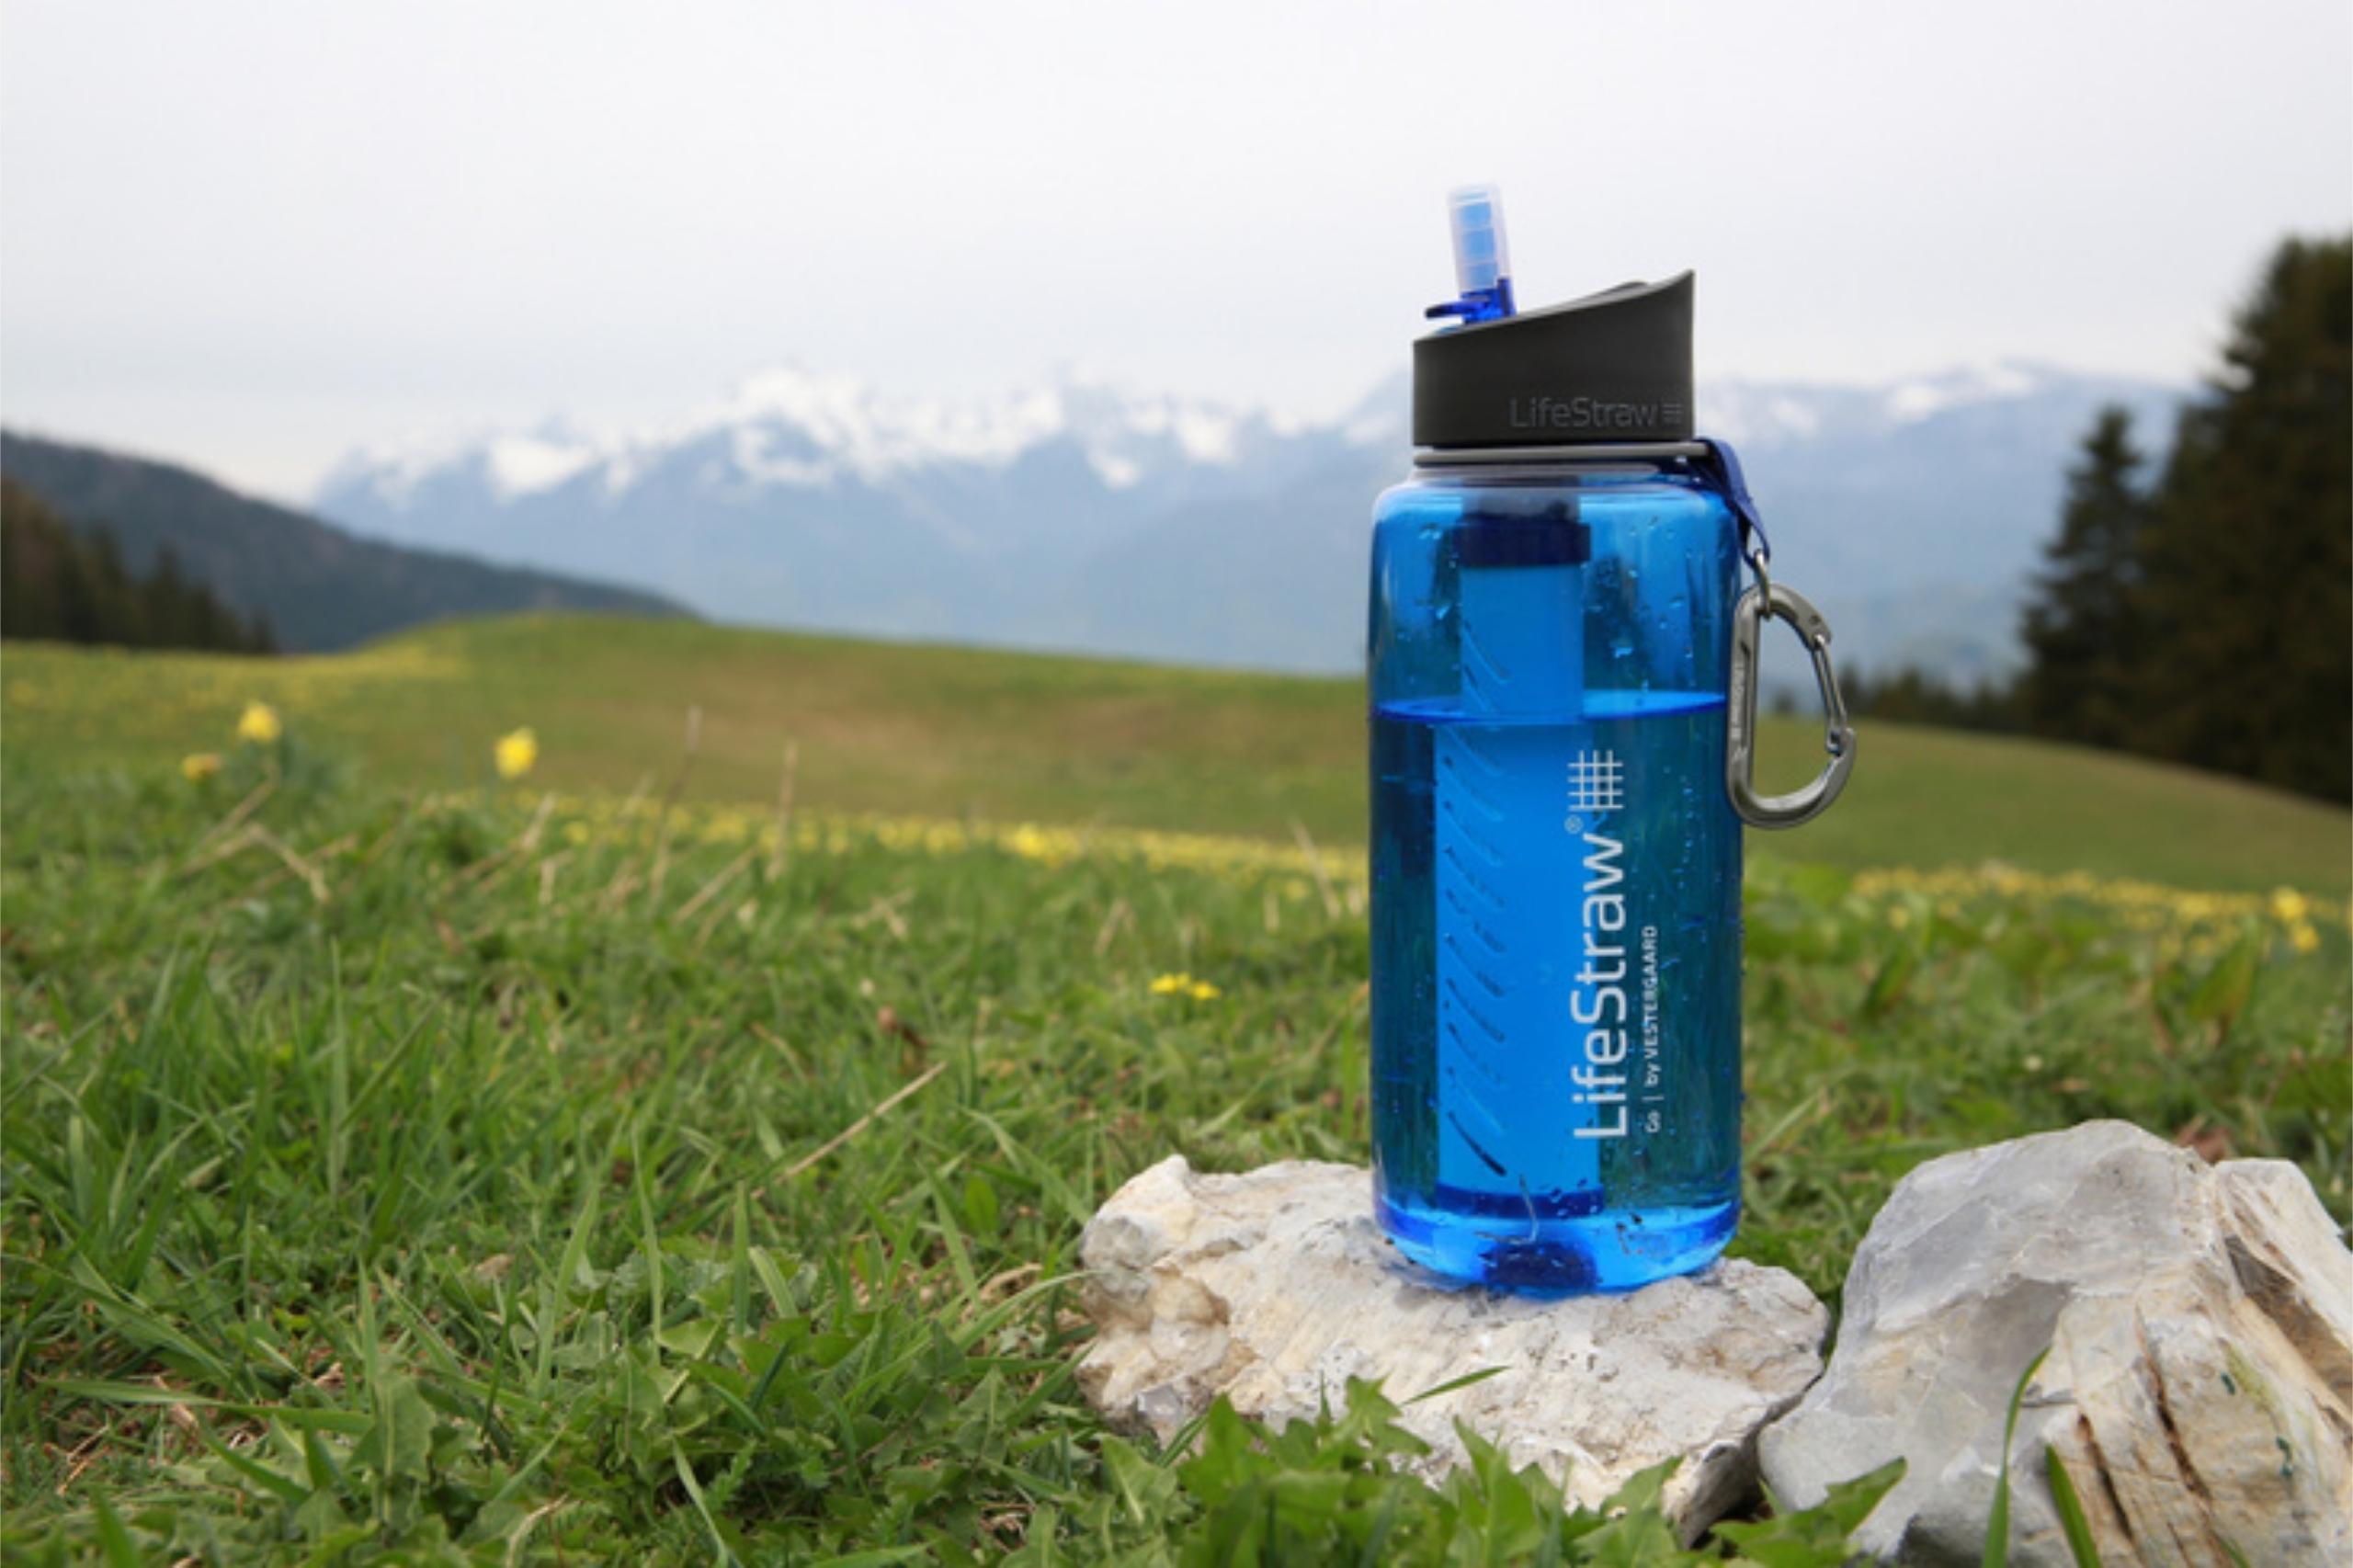 Reines Wasser dank der Filtertrinkflasche LifeStraw.